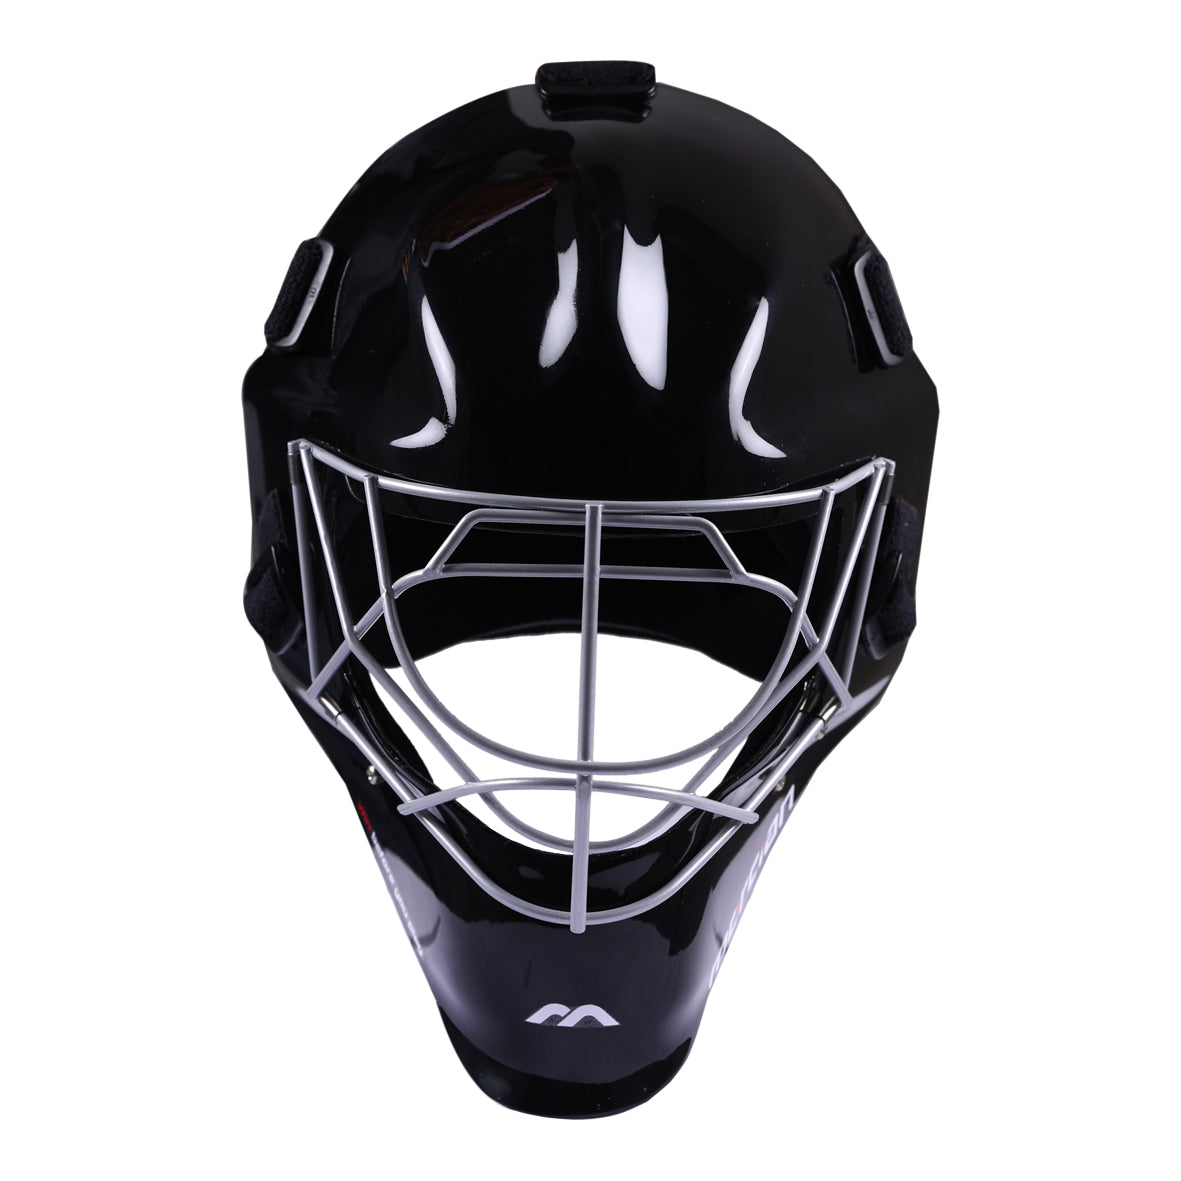 Mercian Black Field Hockey Helmet Genesis